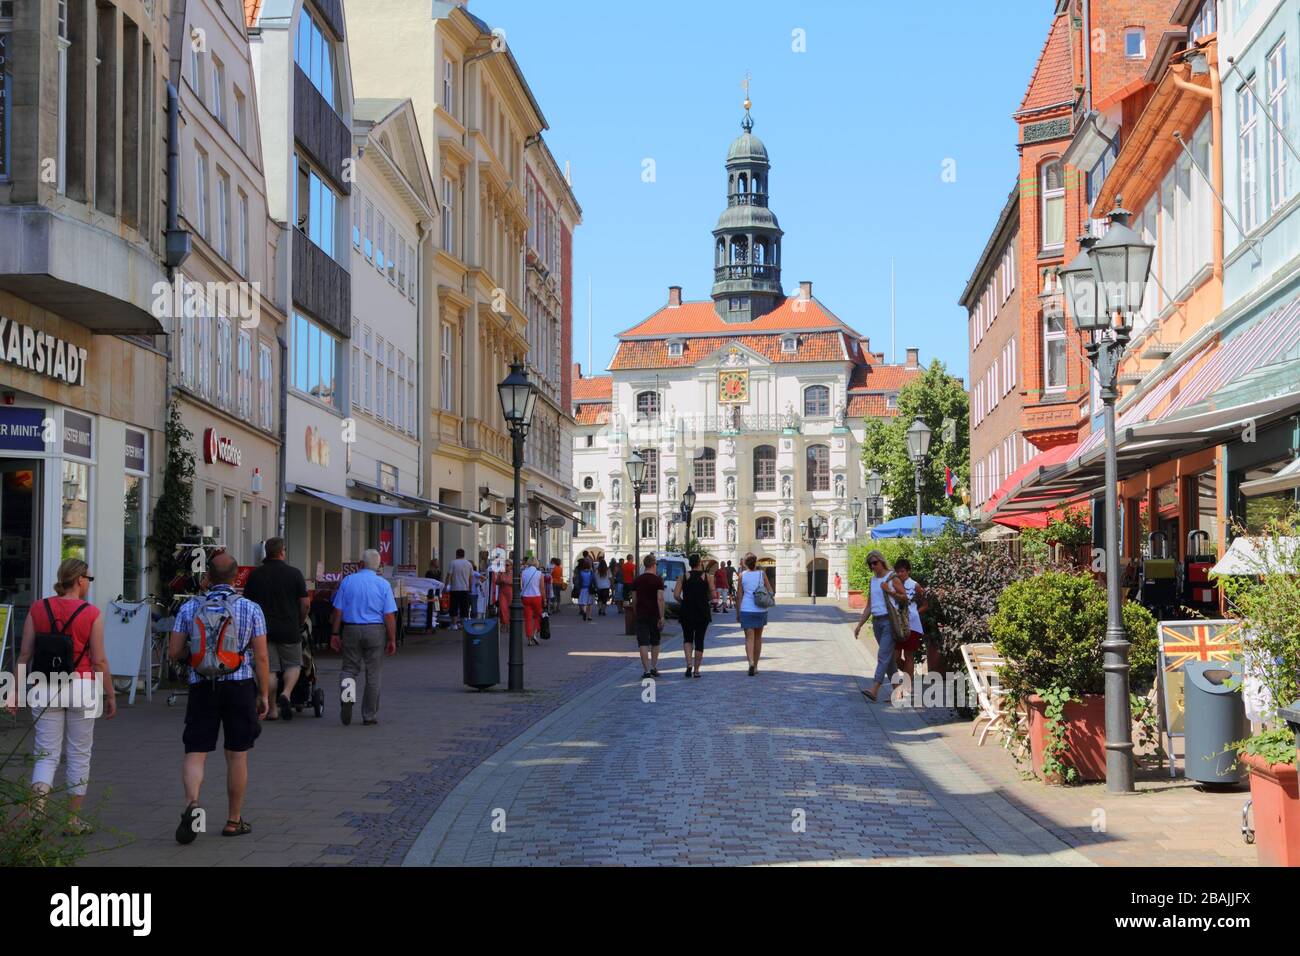 Lüneburg, Allemagne – 23. Juillet 2013 : rue commerçante de la vieille ville de Lüneburg. L'hôtel de ville peut être vu en arrière-plan. Les visiteurs sont locaux b Banque D'Images